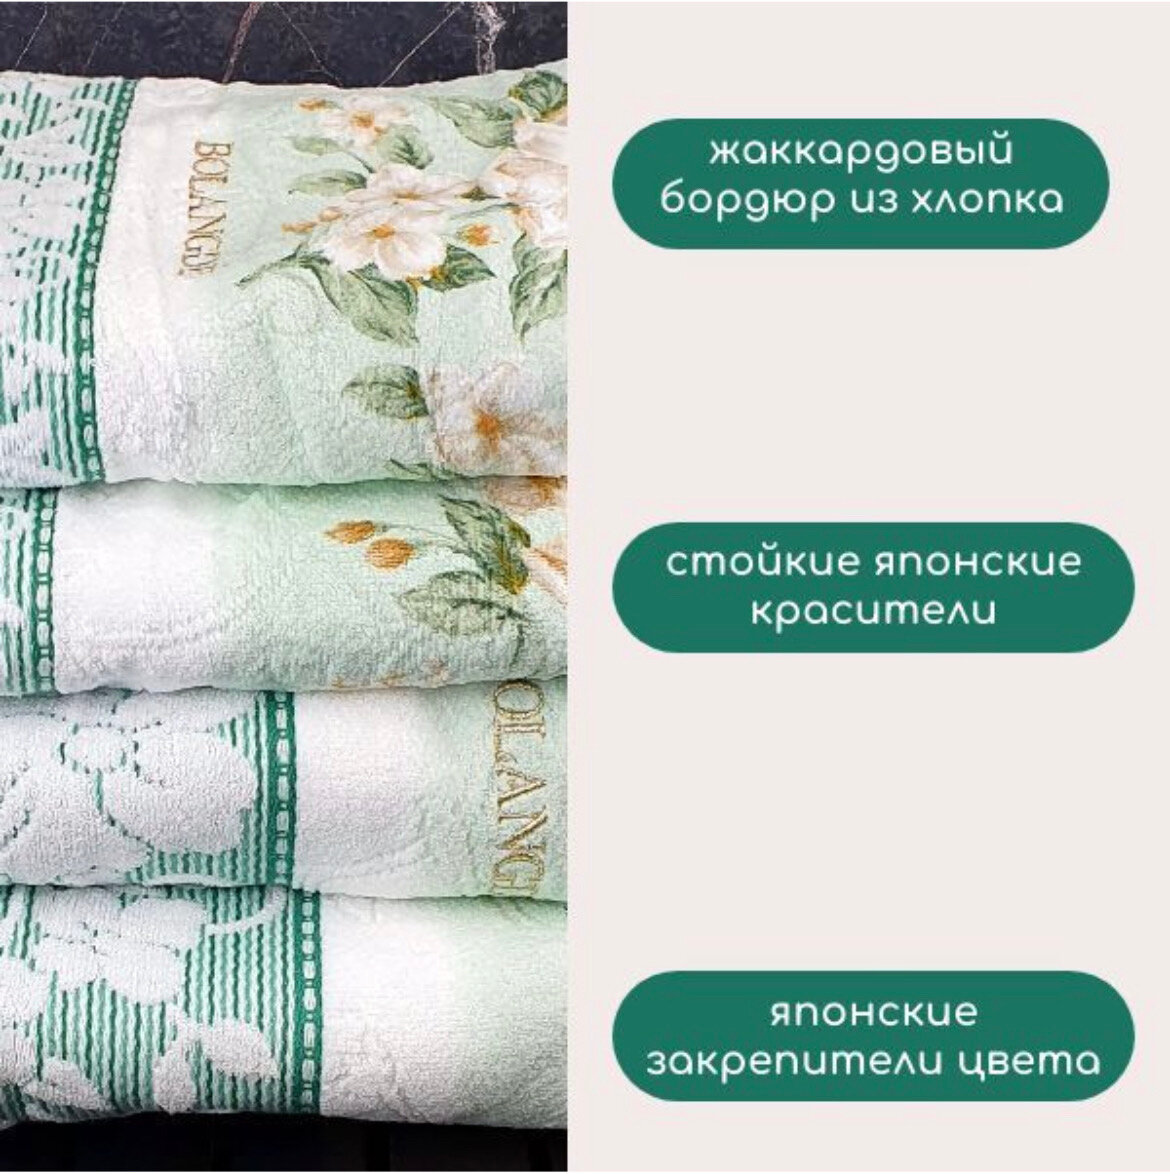 Полотенце махровое для лица и рук, для ванной, Bolangde, Япония, Жасмин, зеленый, 50x90